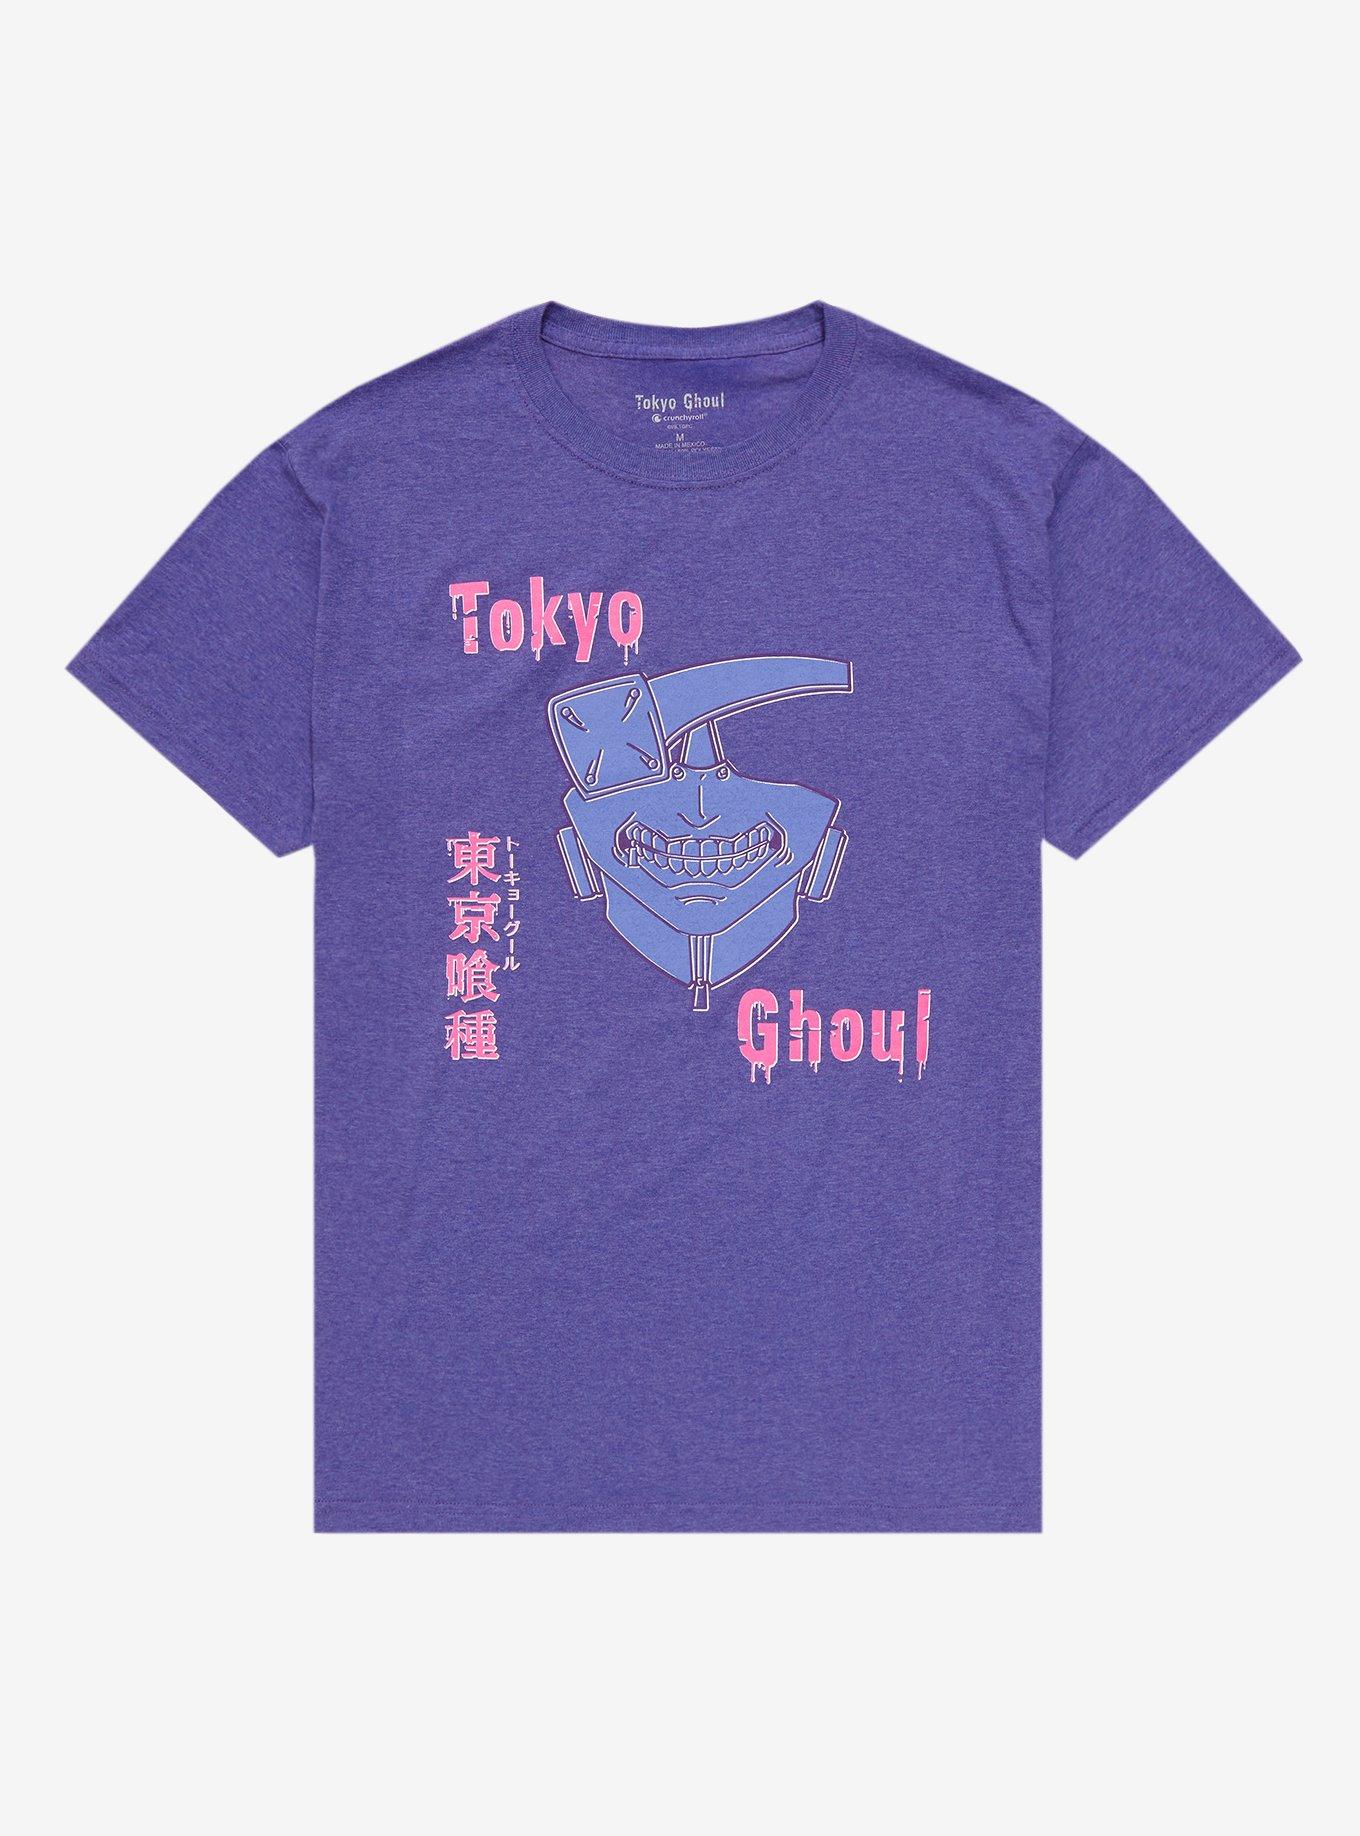 Crunchyroll.pt - Quanto é mil menos sete? 💀 (via Tokyo Ghoul